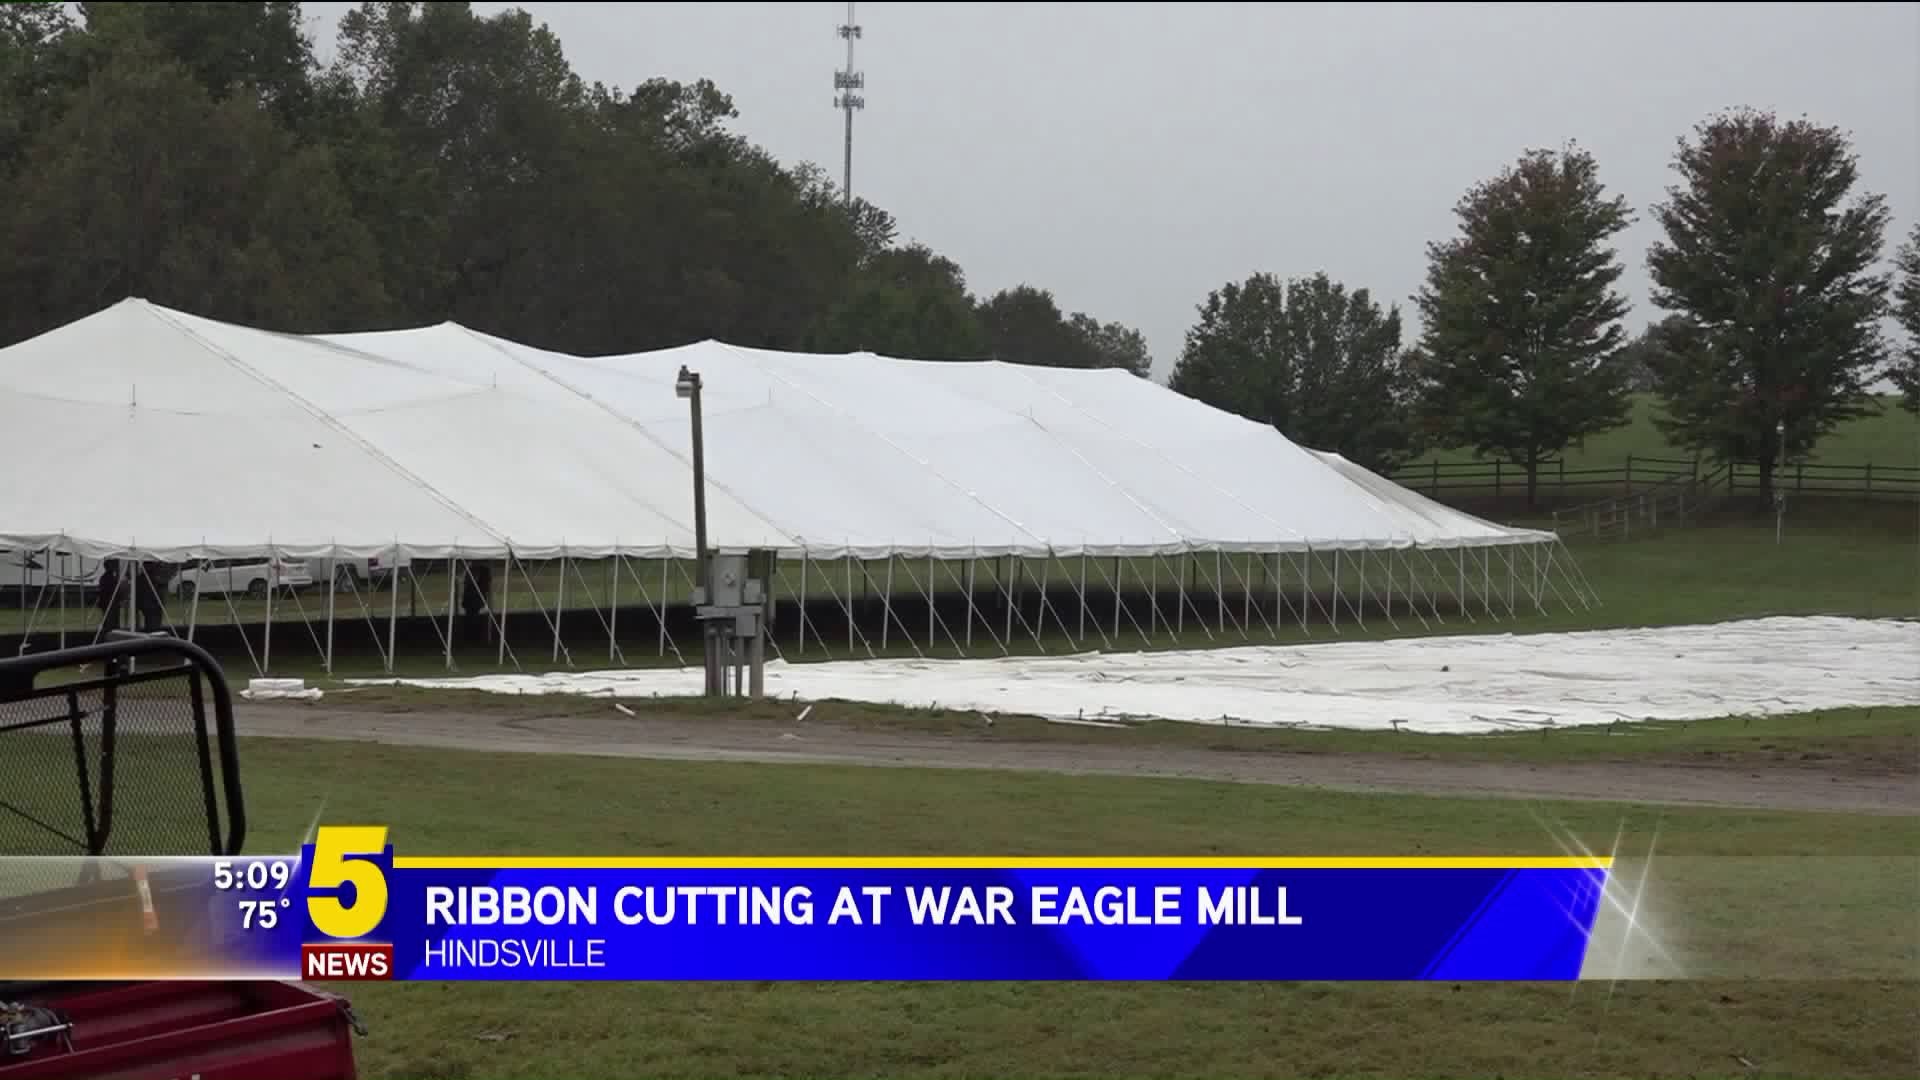 Ribon Cutting At War Eagle Mill